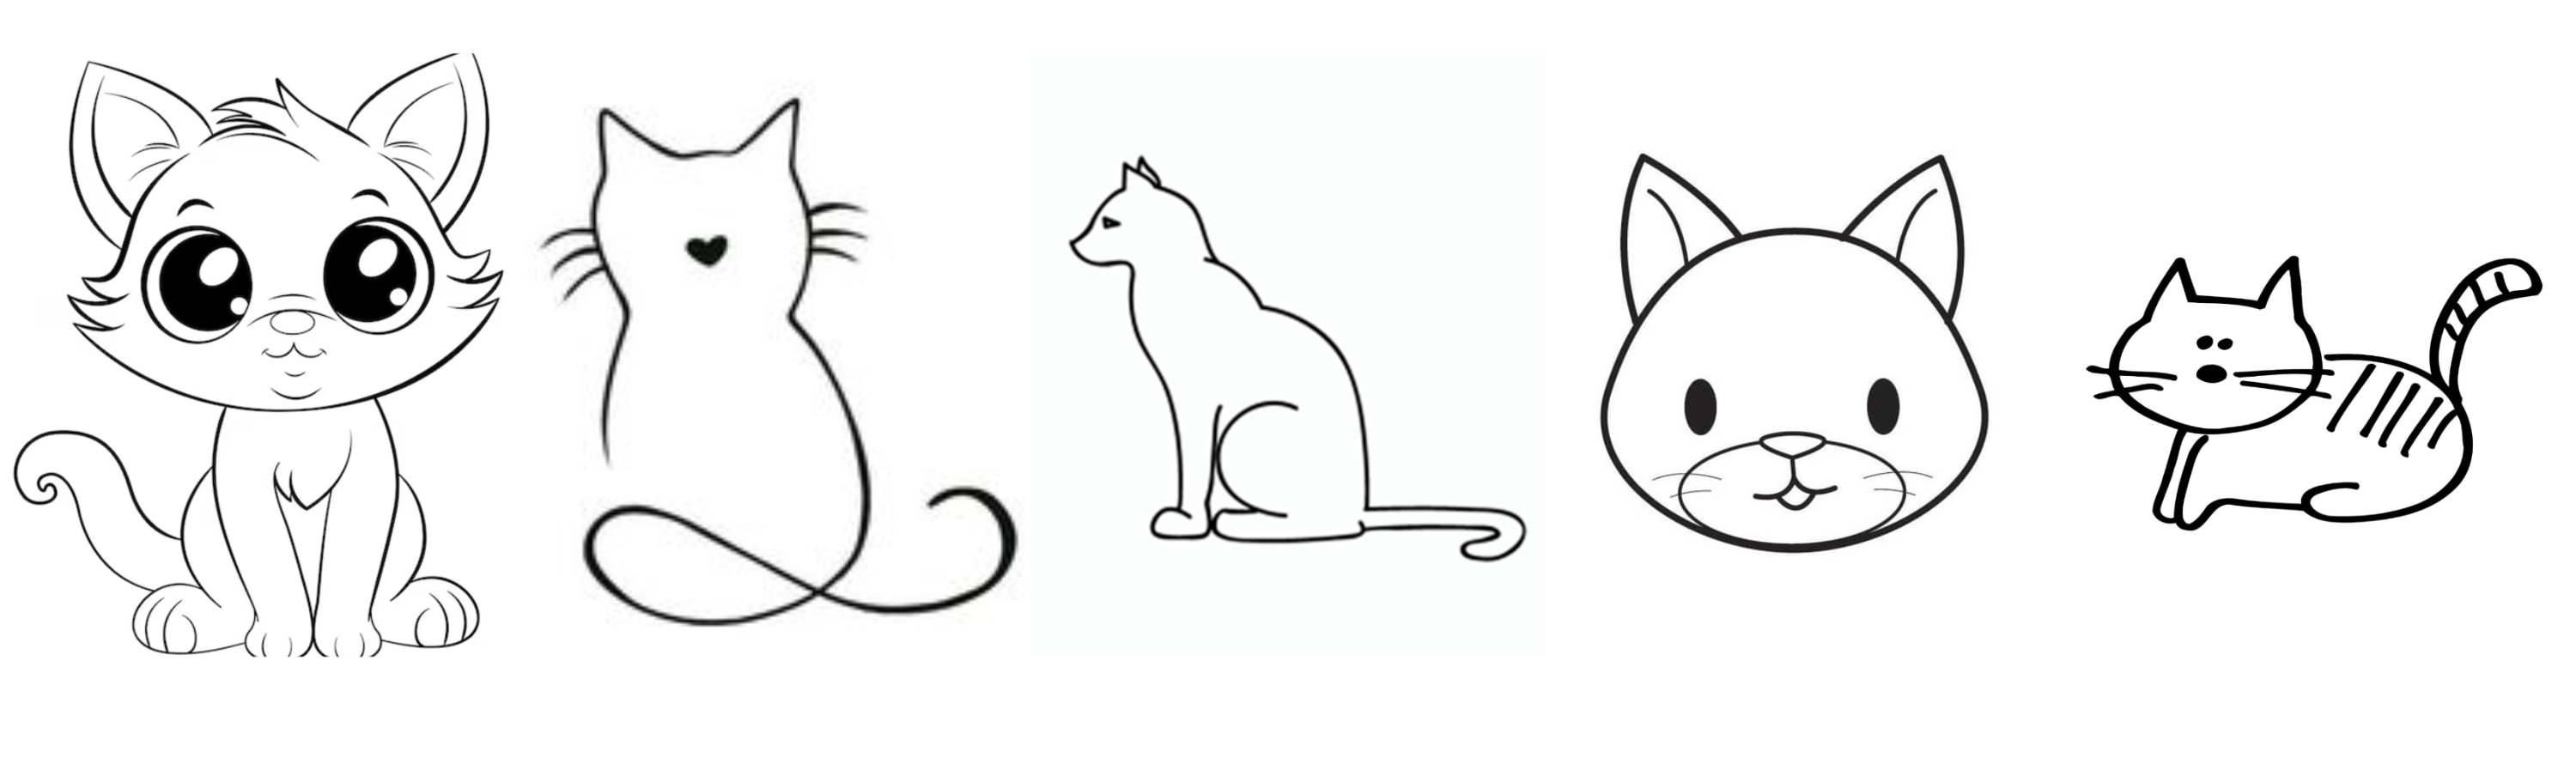 10 ideas de dibujos fáciles para hacer de gatos